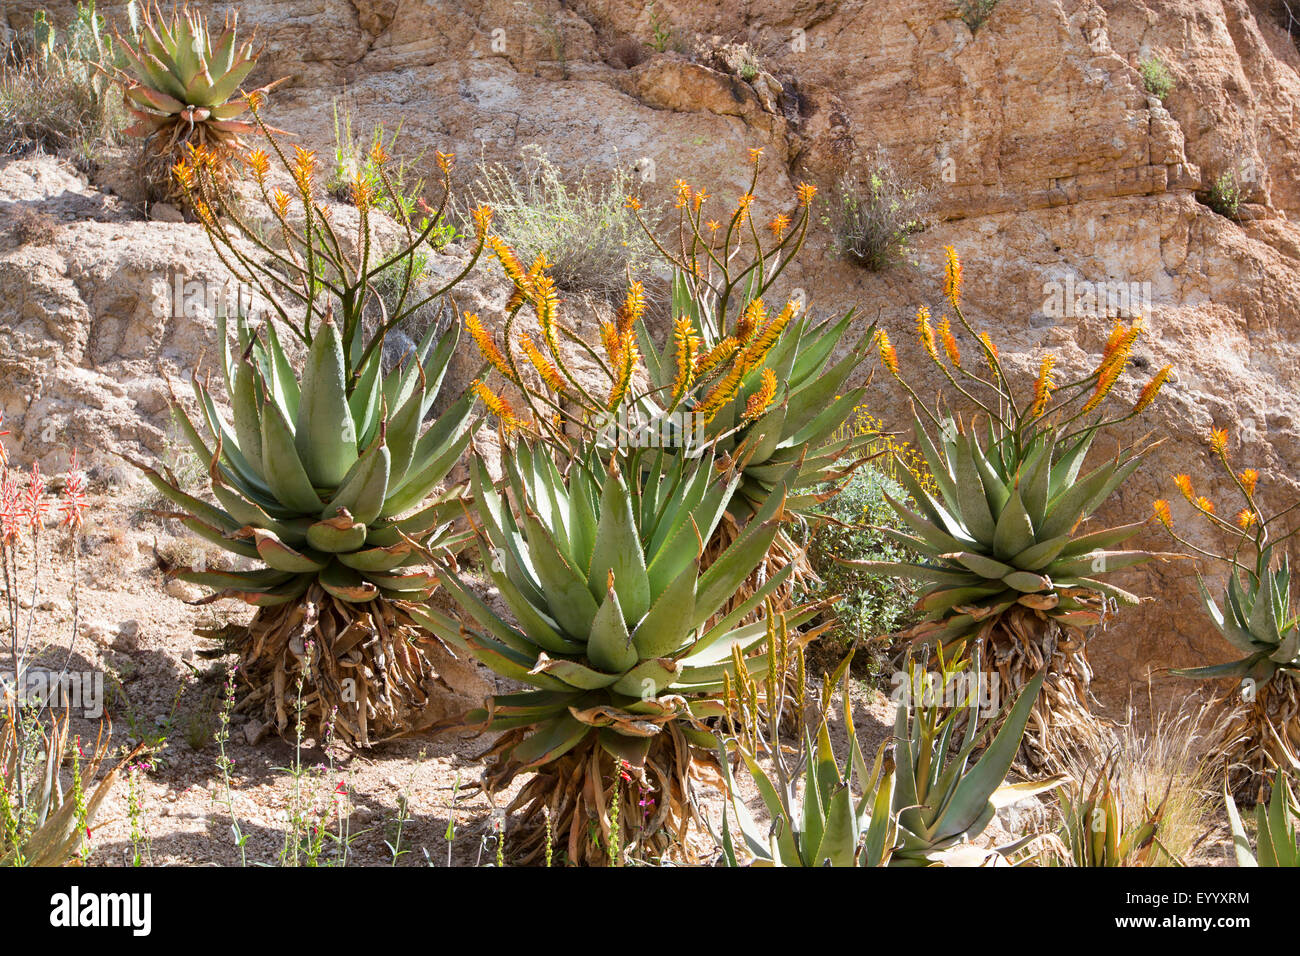 Aloe montagne, télévision flowerd, aloès (Aloe Aloe épineuse grand marlothii), groupe de floraison à une paroi rocheuse, USA, Arizona, Boyce Thompson Arboretum Banque D'Images